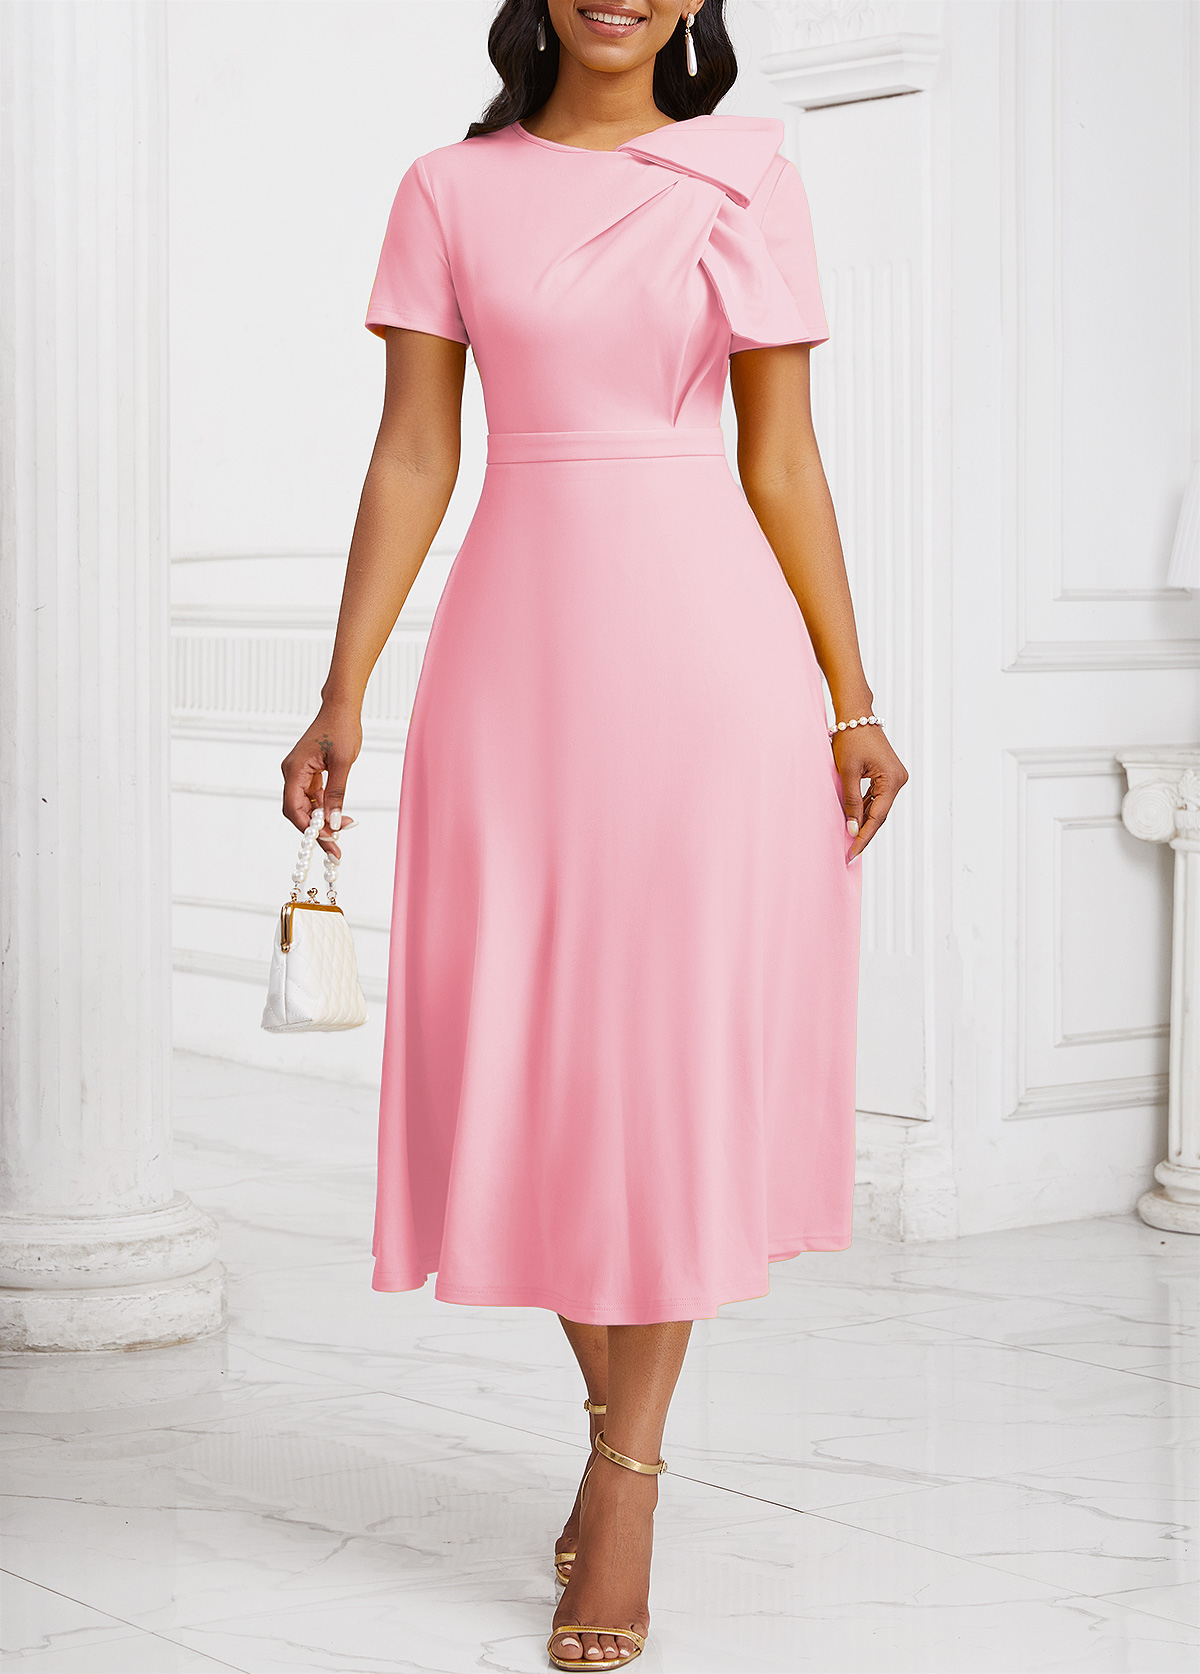 ROTITA Zipper Light Pink Asymmetrical Neck Short Sleeve Dress